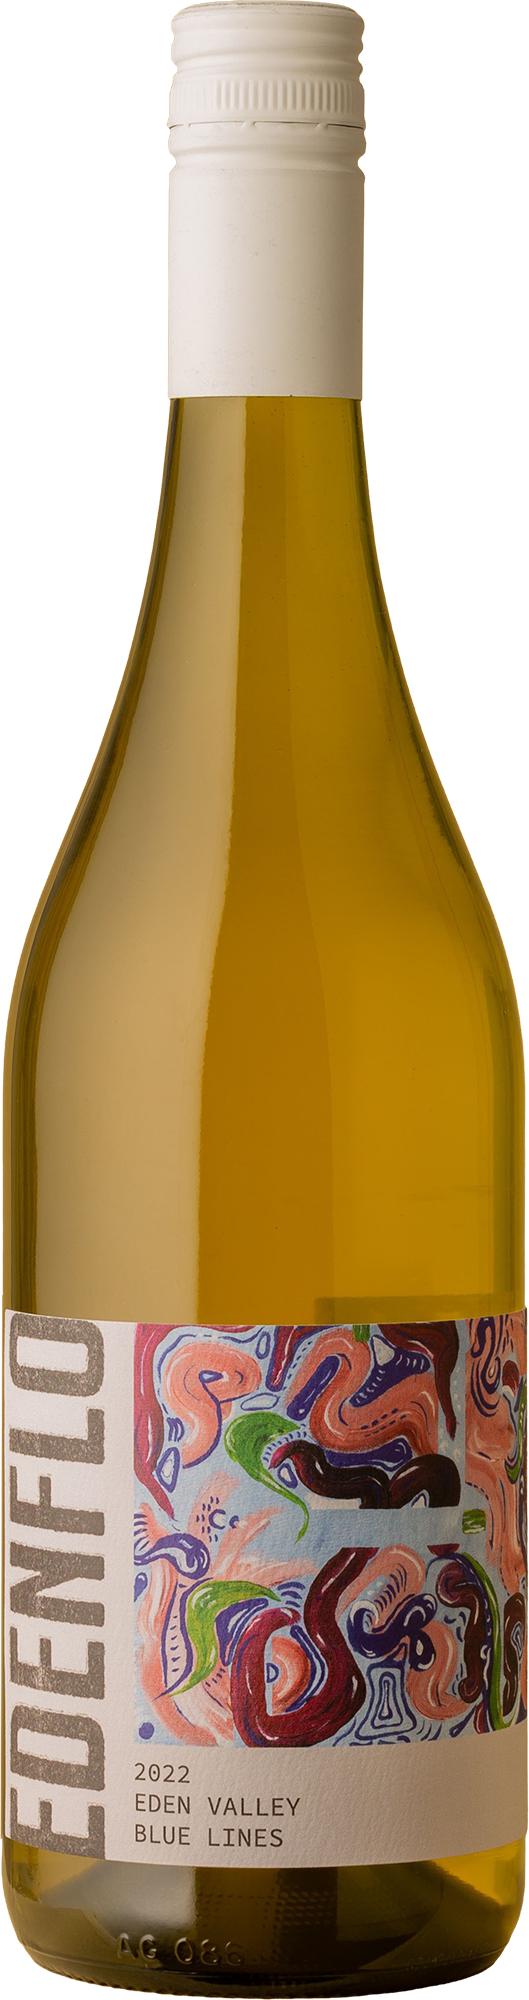 Edenflo - Blue Lines Semillon Blend 2022 Orange Wine